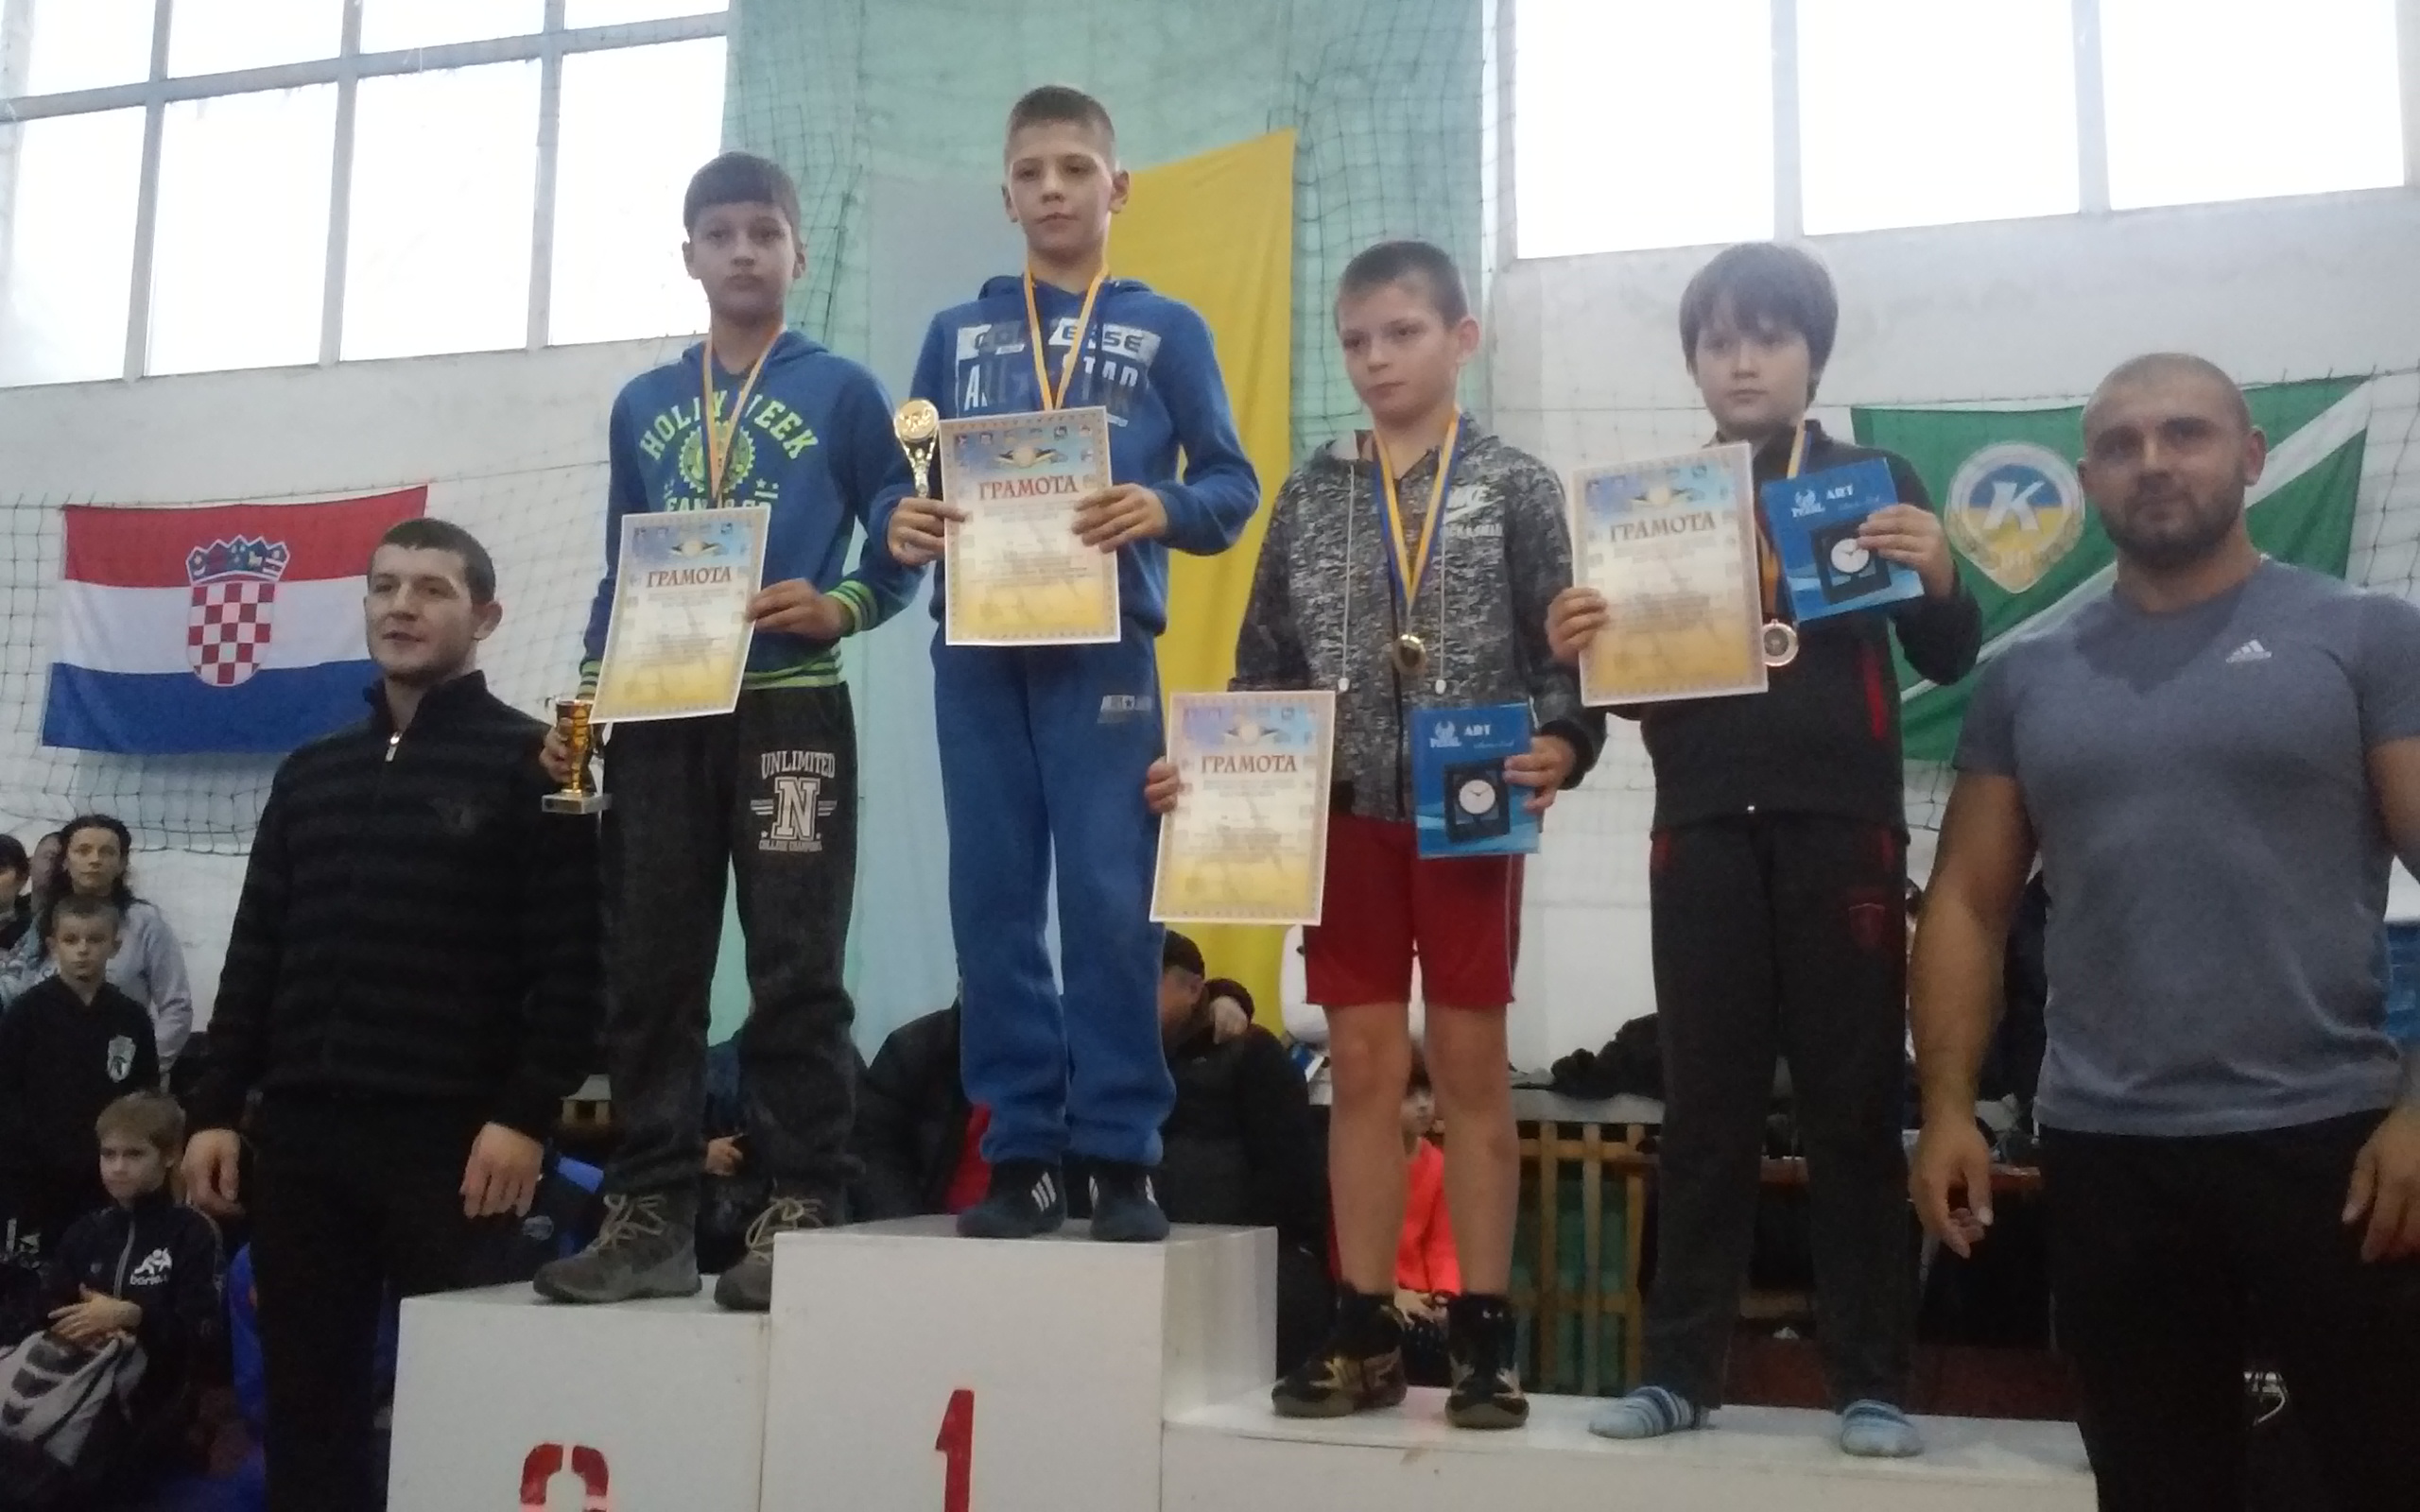 25-27 ноября да 2016 года в г.Берегово проводился международный турнир по греко-римской борьбе среди юношей, кадетов и юниоров. 